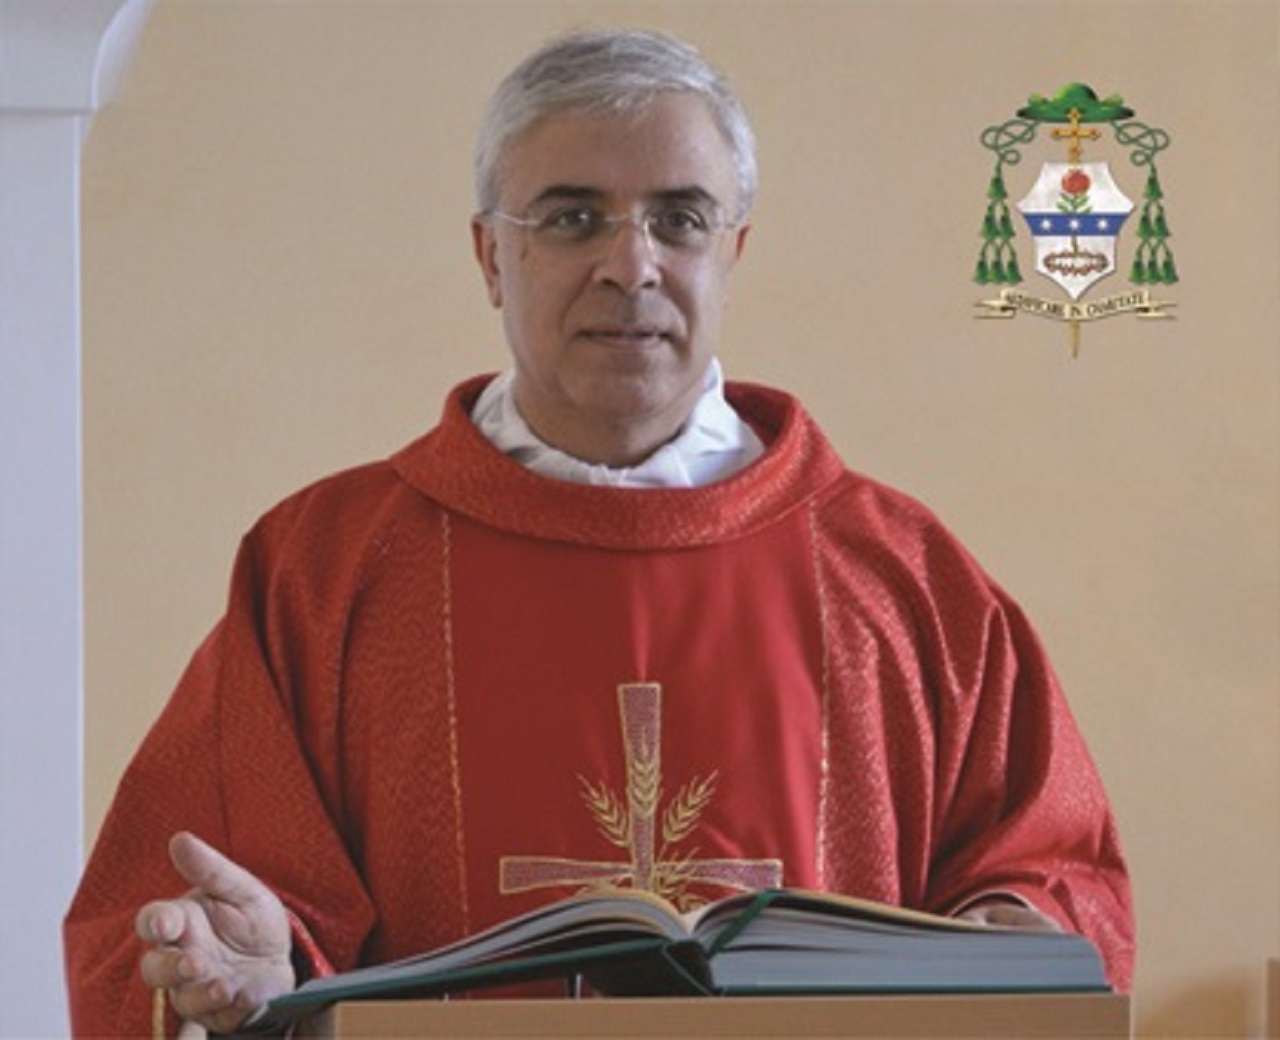 Inizia la Quaresima, il messaggio dell’Arcivescovo Renna: “Ritornare sulla strada della Pasqua”